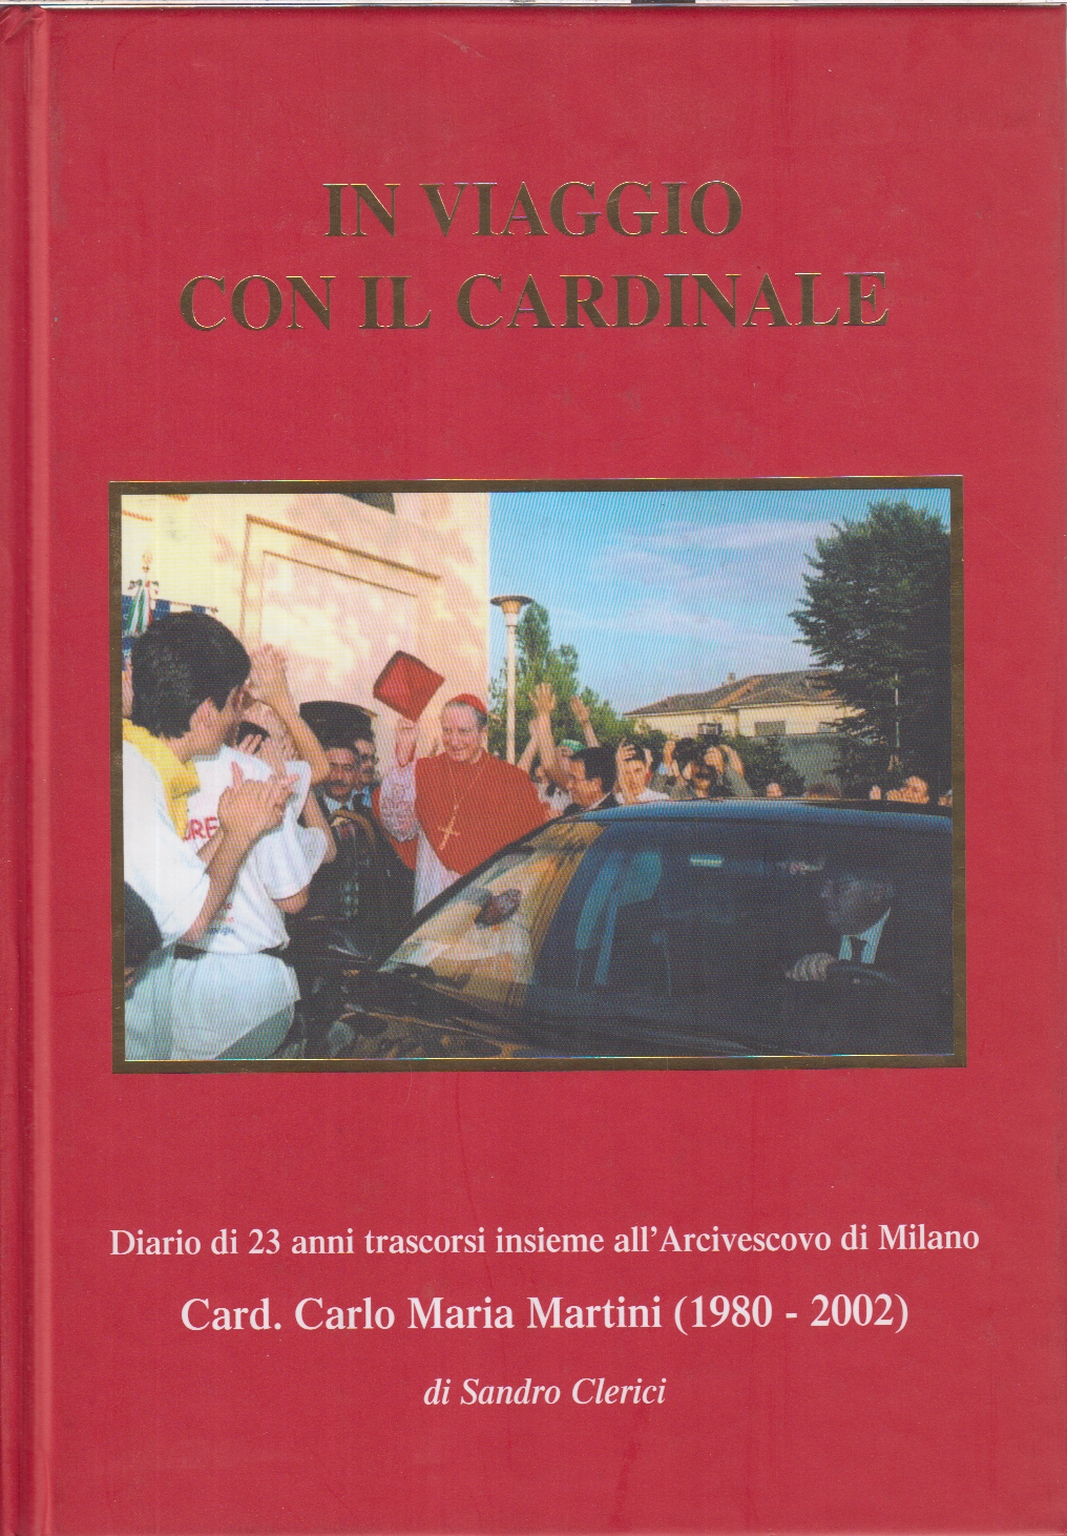 In viaggio con il cardinale, Sandro Clerici